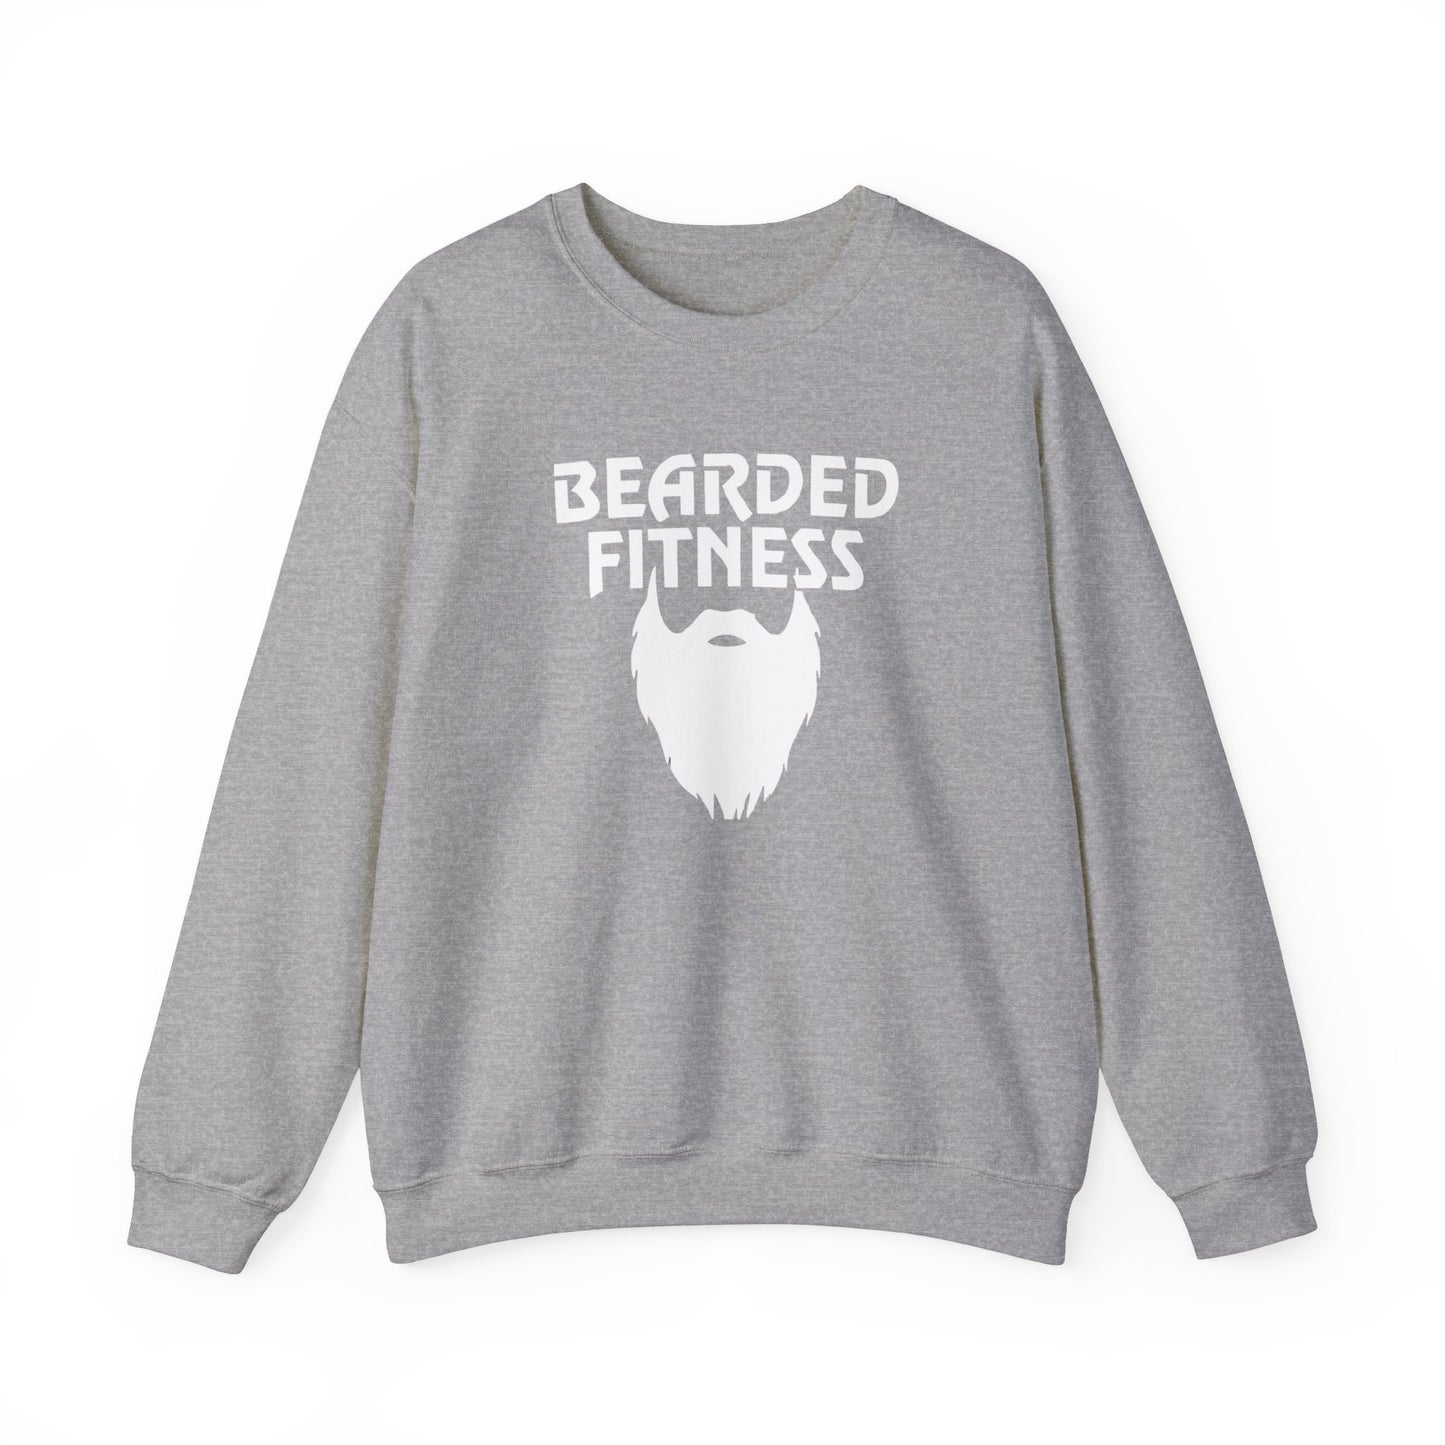 OG Bearded Fitness Sweater